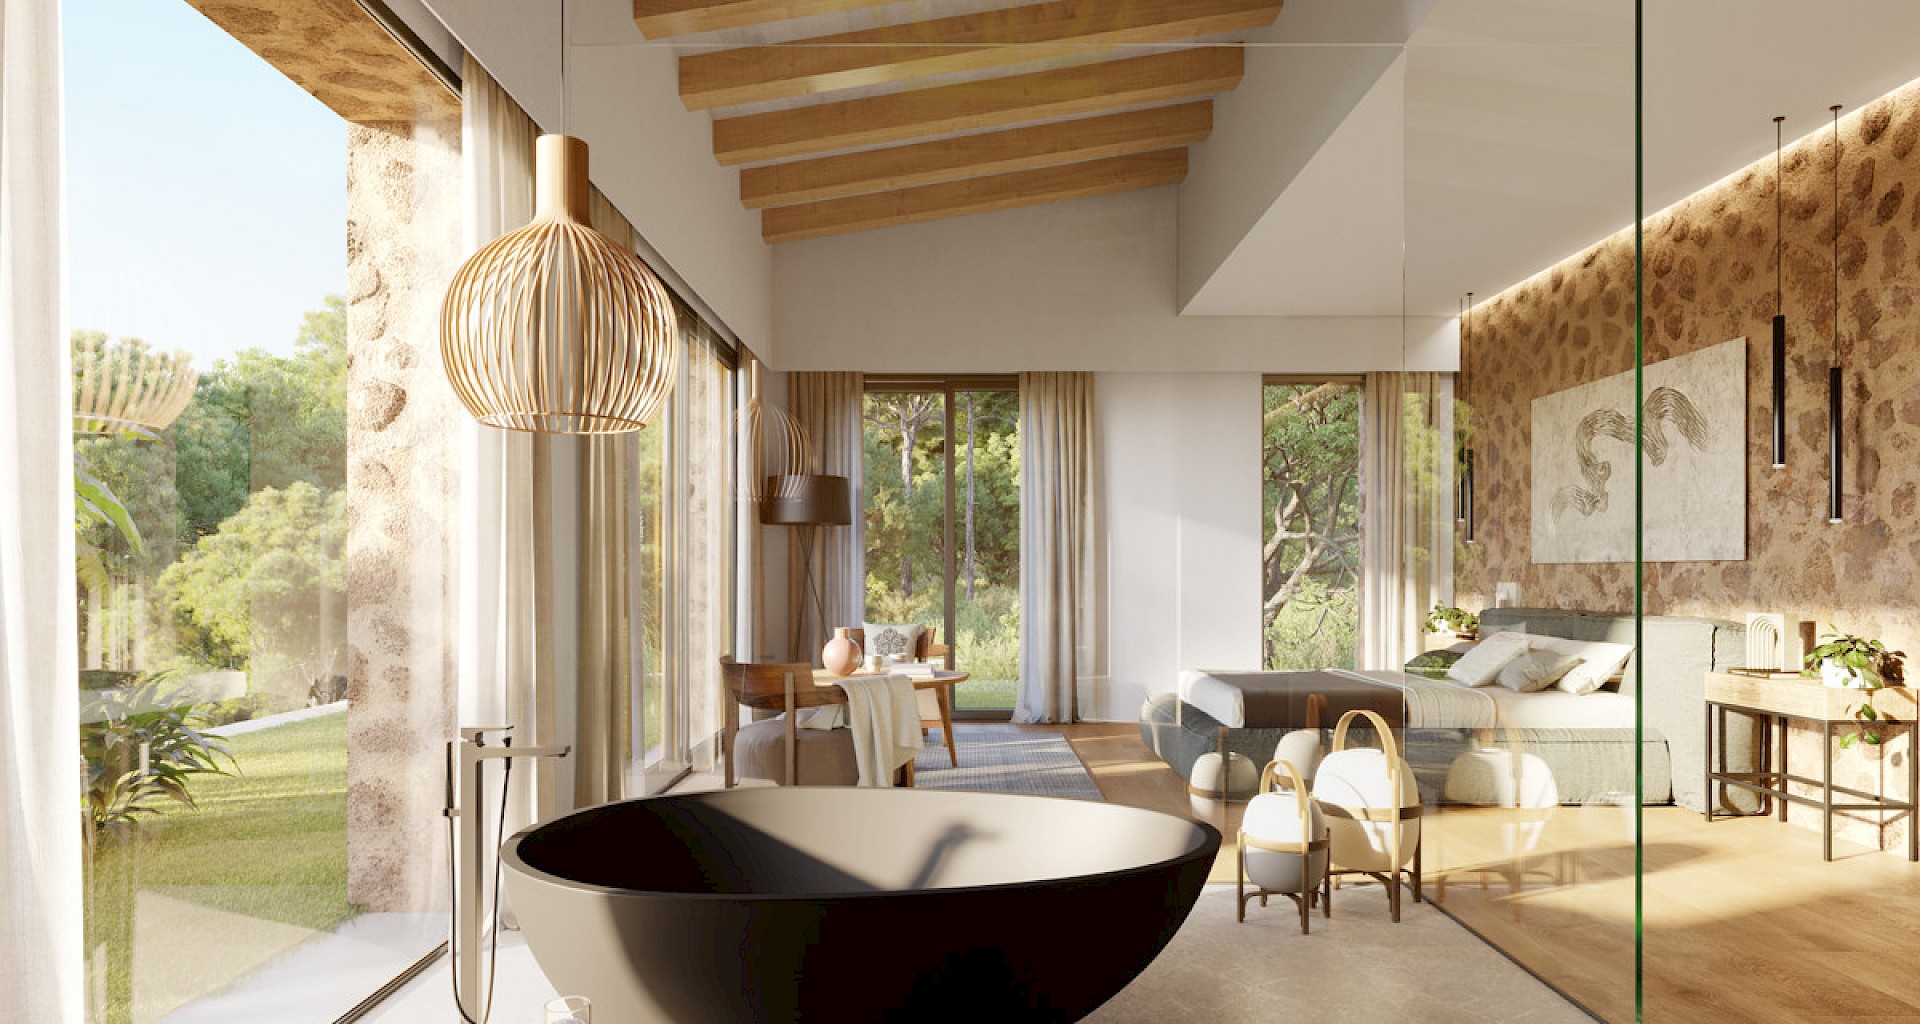 KROHN & LUEDEMANN Proyecto de una finca moderna en Santa María con vistas panorámicas Master Suite Finca Santa Maria